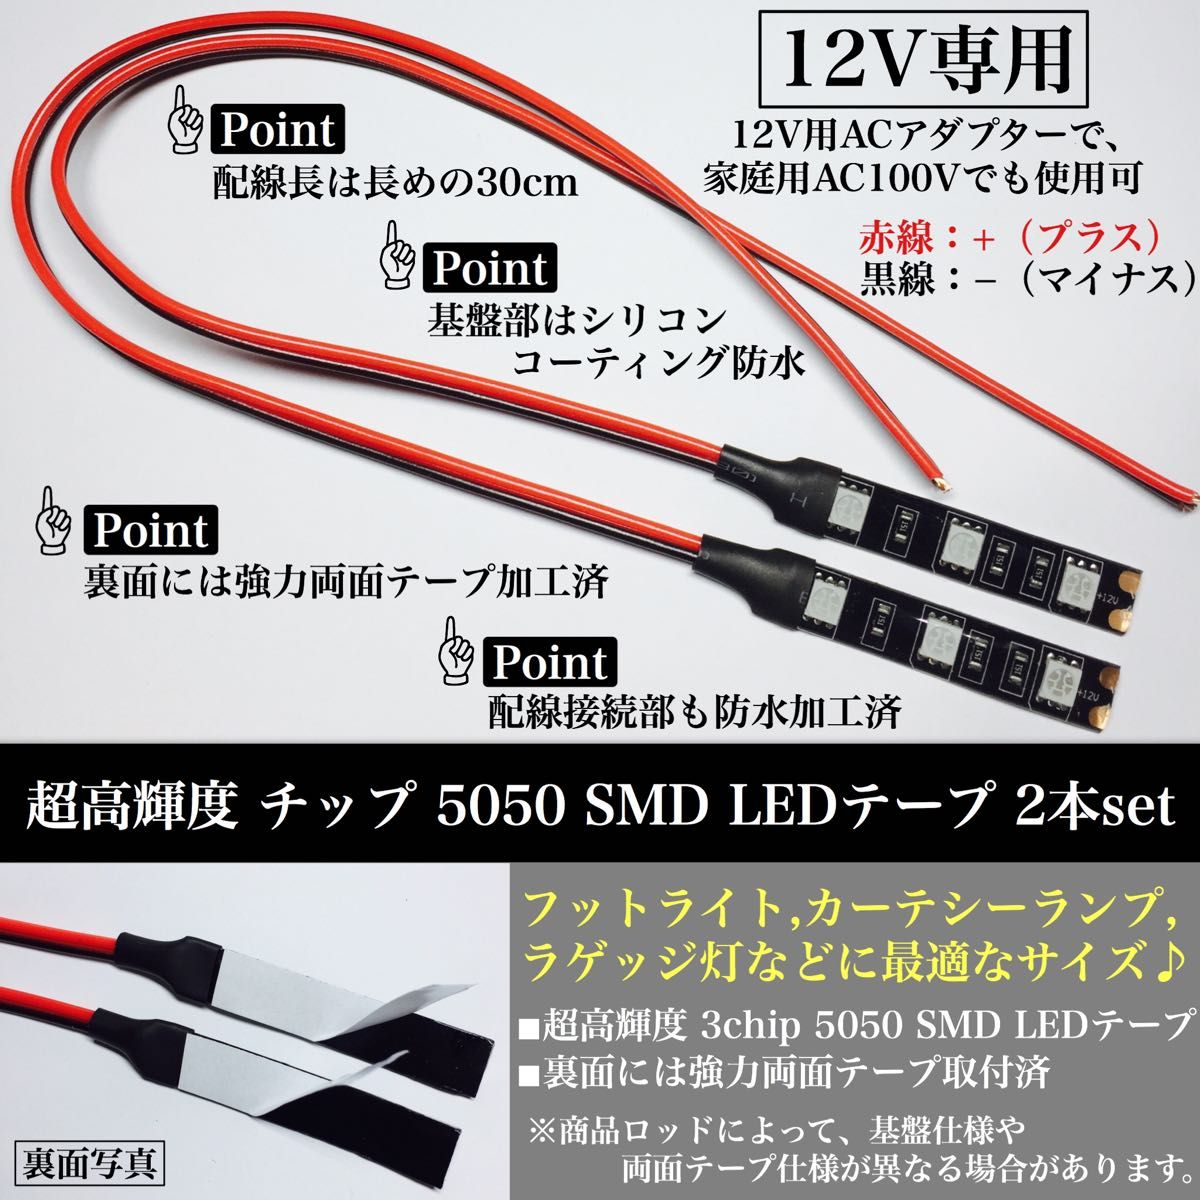 12V 防水 超高輝度 5050 SMD LED テープ ライト 正面発光 5cm 2本 配線30cm 3M両面テープ 黒ベース